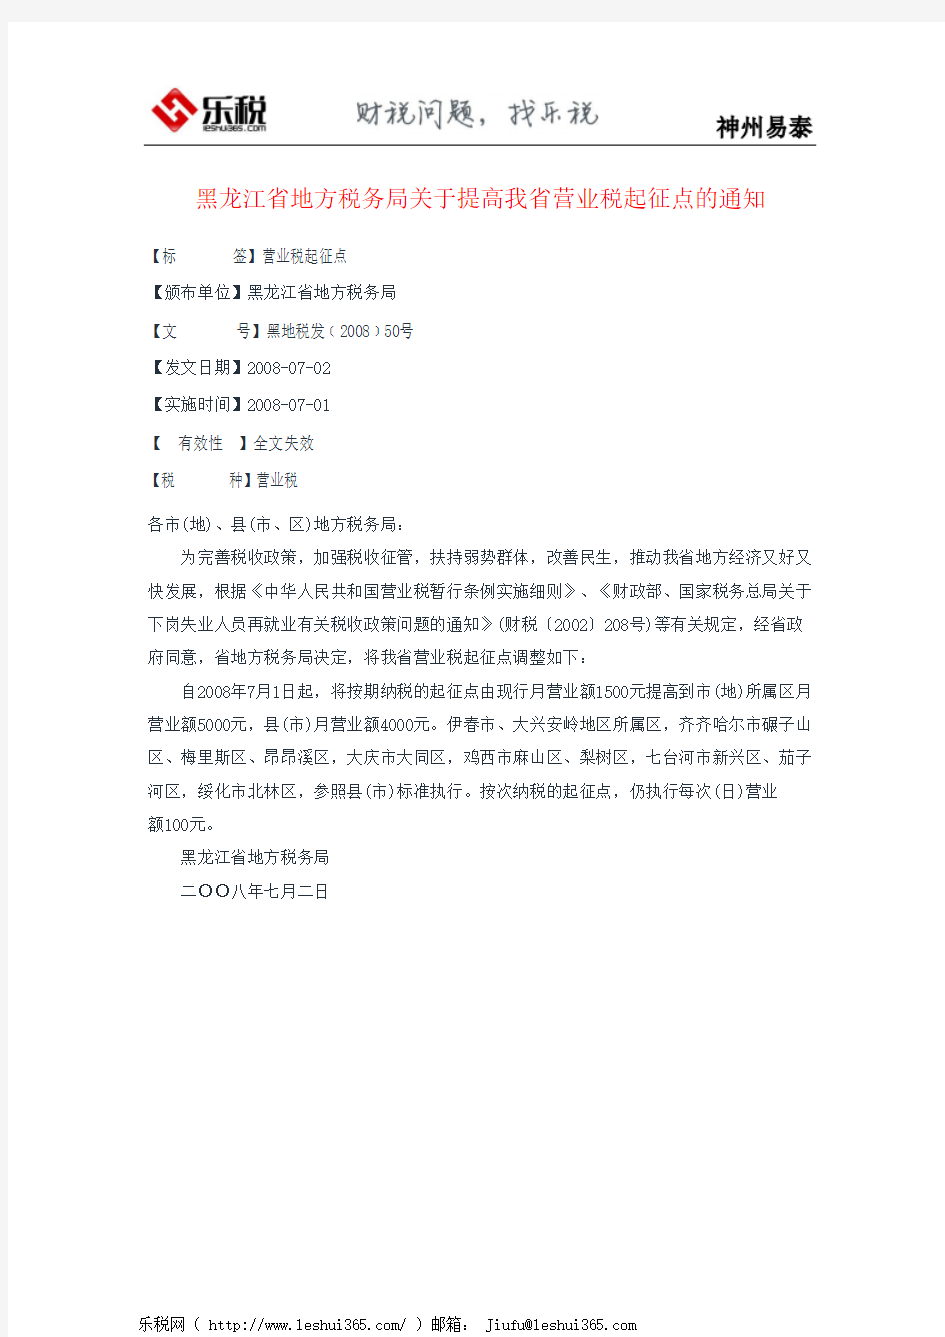 黑龙江省地方税务局关于提高我省营业税起征点的通知